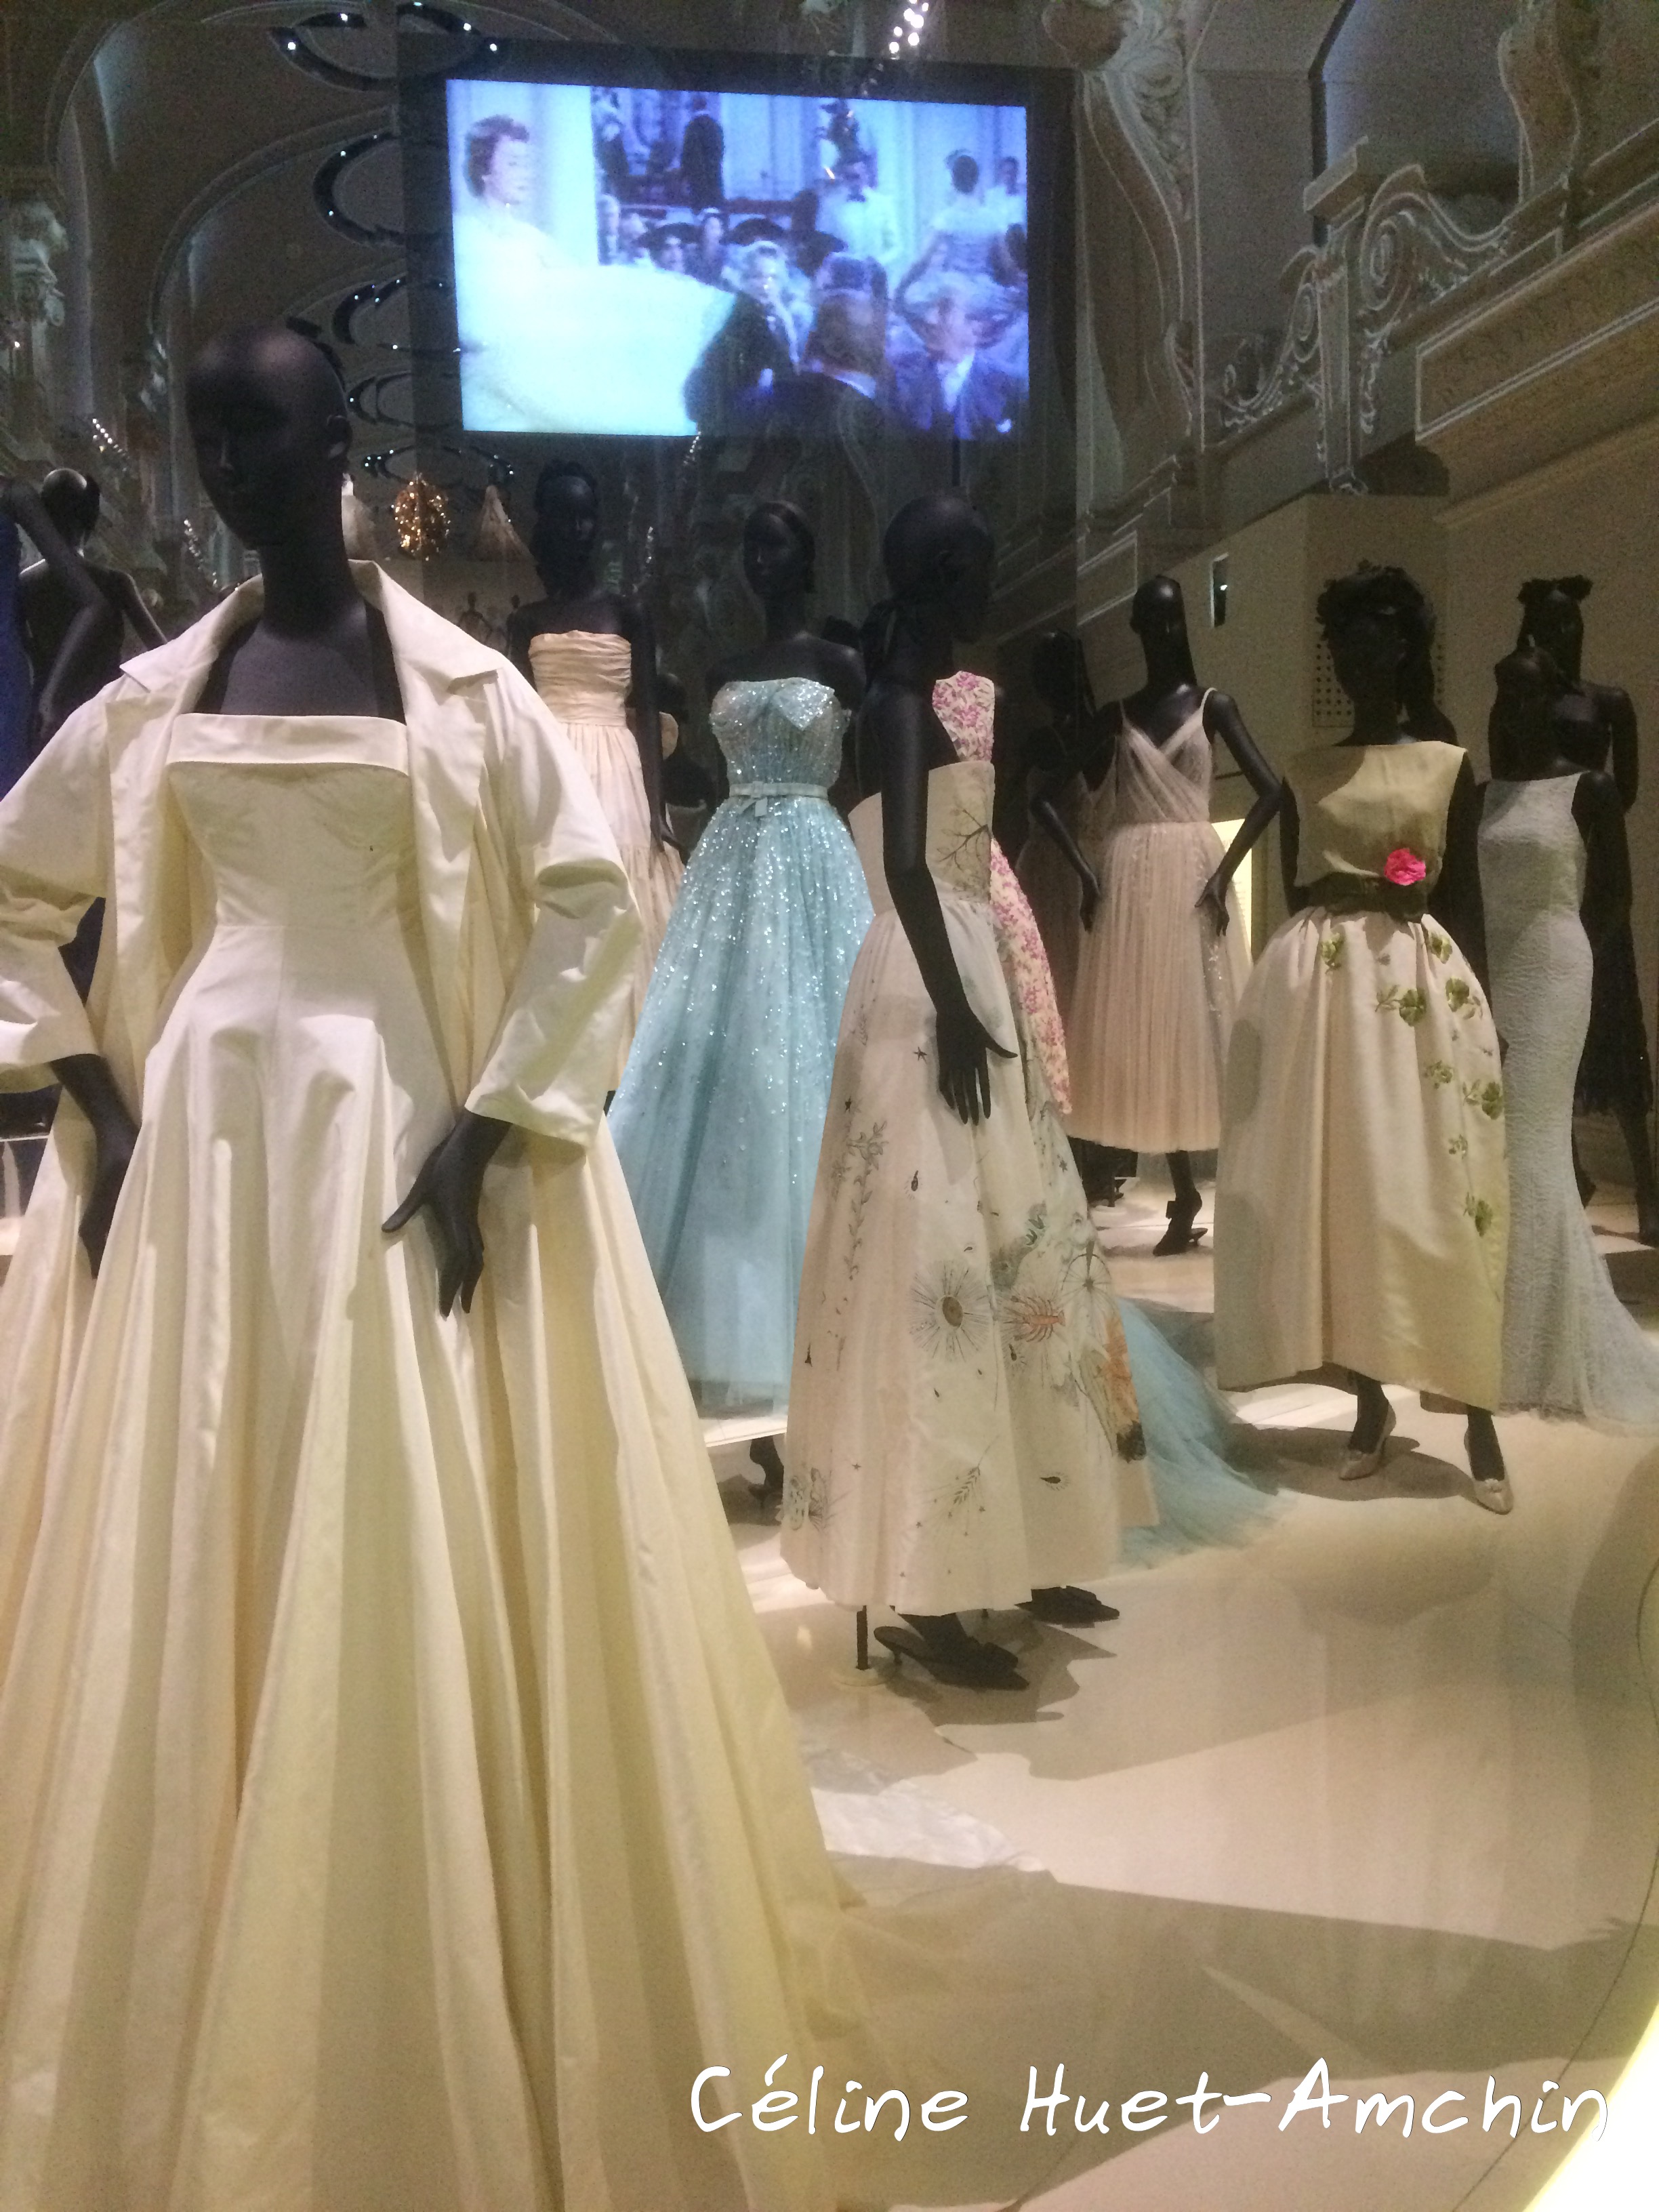 Exposition Christian Dior, couturier du rêve Les Arts Décoratifs Paris